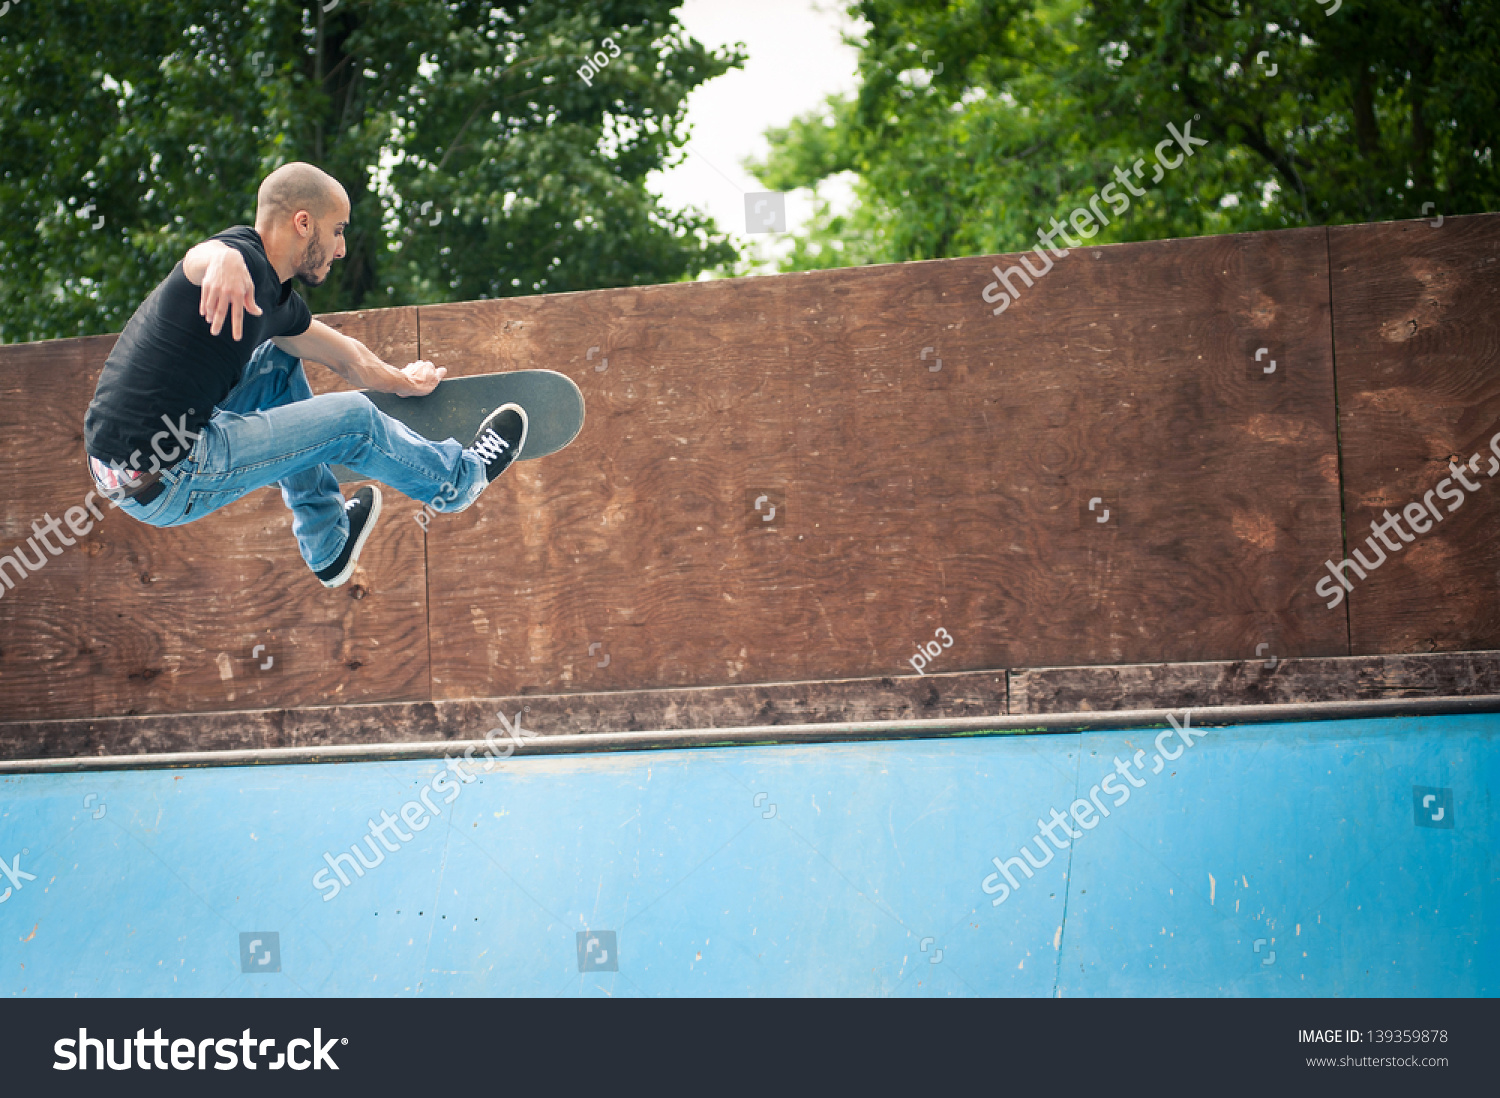 Skateboarder Jumping Halfpipe Skatepark Stock Photo Safe To Use